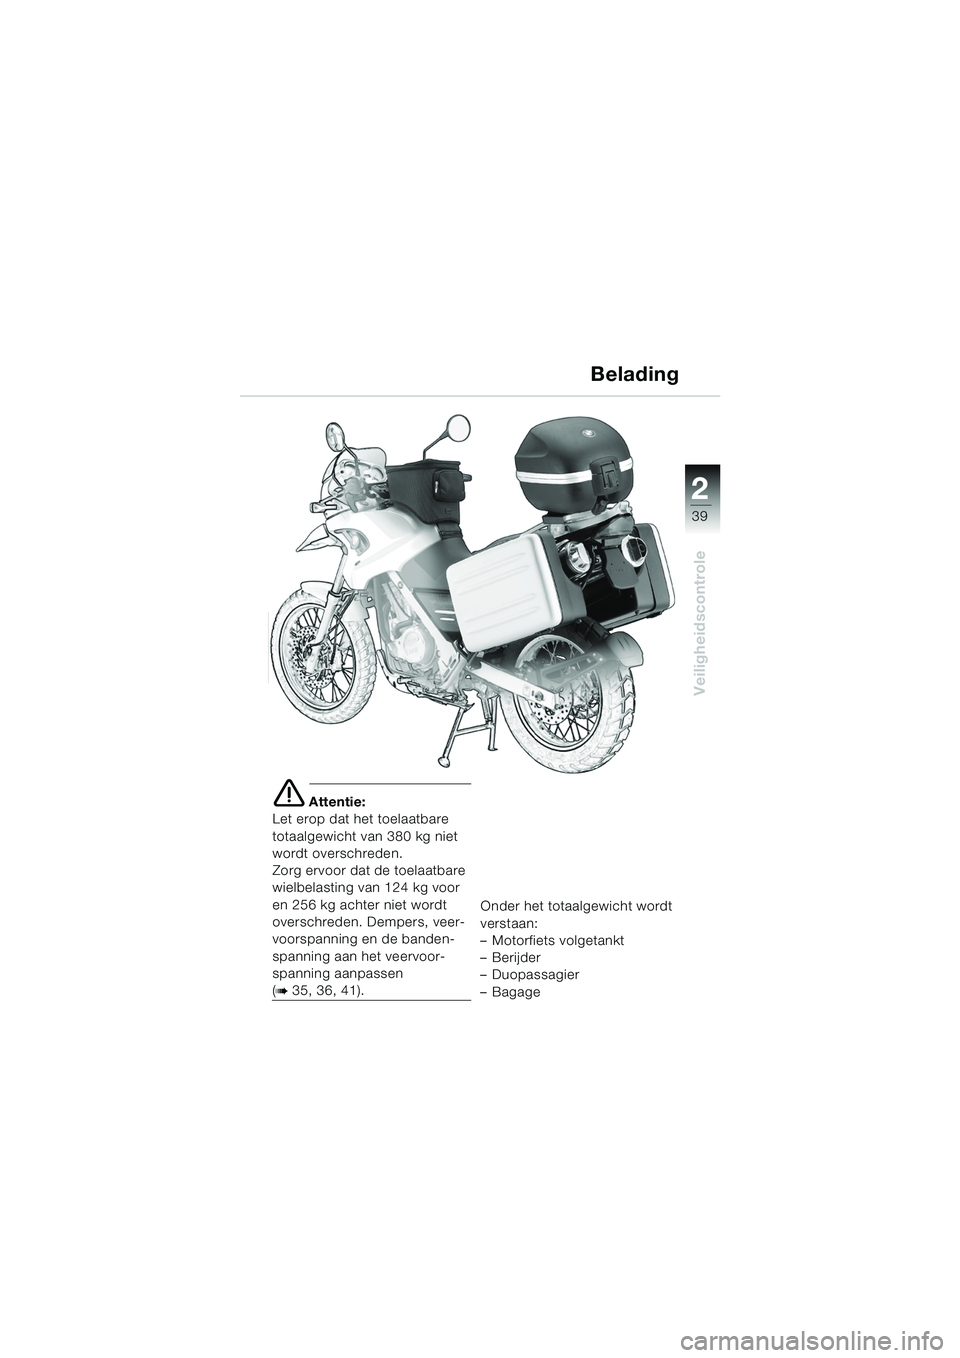 BMW MOTORRAD F 650 GS 2003  Handleiding (in Dutch) 1
39
Veiligheidscontrole
2
e Attentie:
Let erop dat het toelaatbare 
totaalgewicht van 380 kg niet 
wordt overschreden.
Zorg ervoor dat de toelaatbare 
wielbelasting van 124 kg voor 
en 256 kg achter 